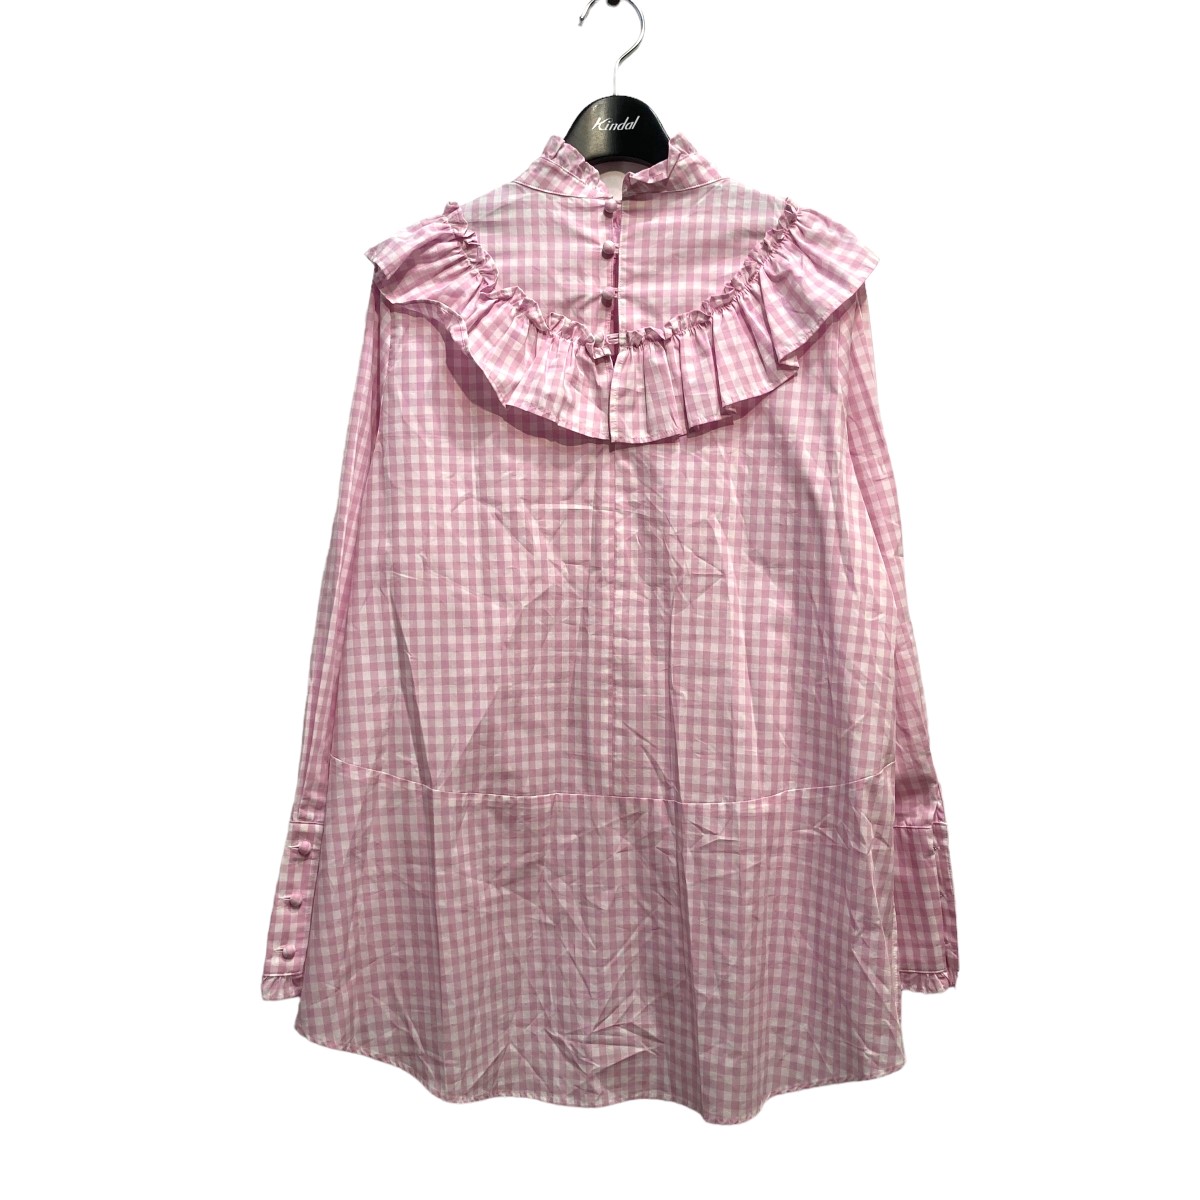 ○送料無料○ rosy monster フリルギンガムチェックシャツ ピンク